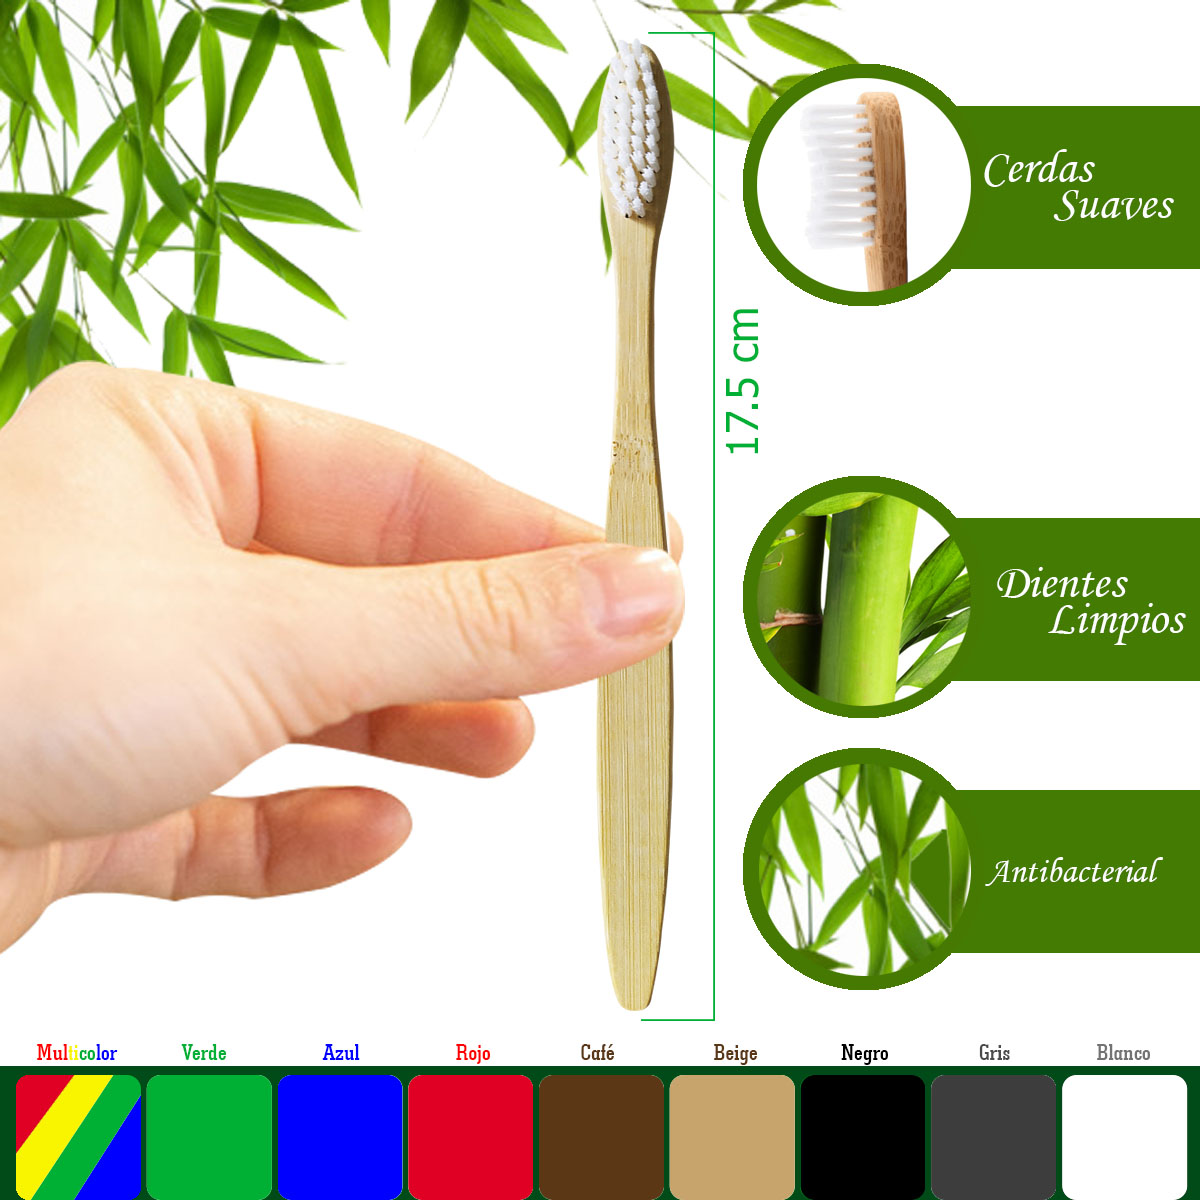 Soporte de bambú para cepillo de dientes. Ecodonti. 100% biodegradable.